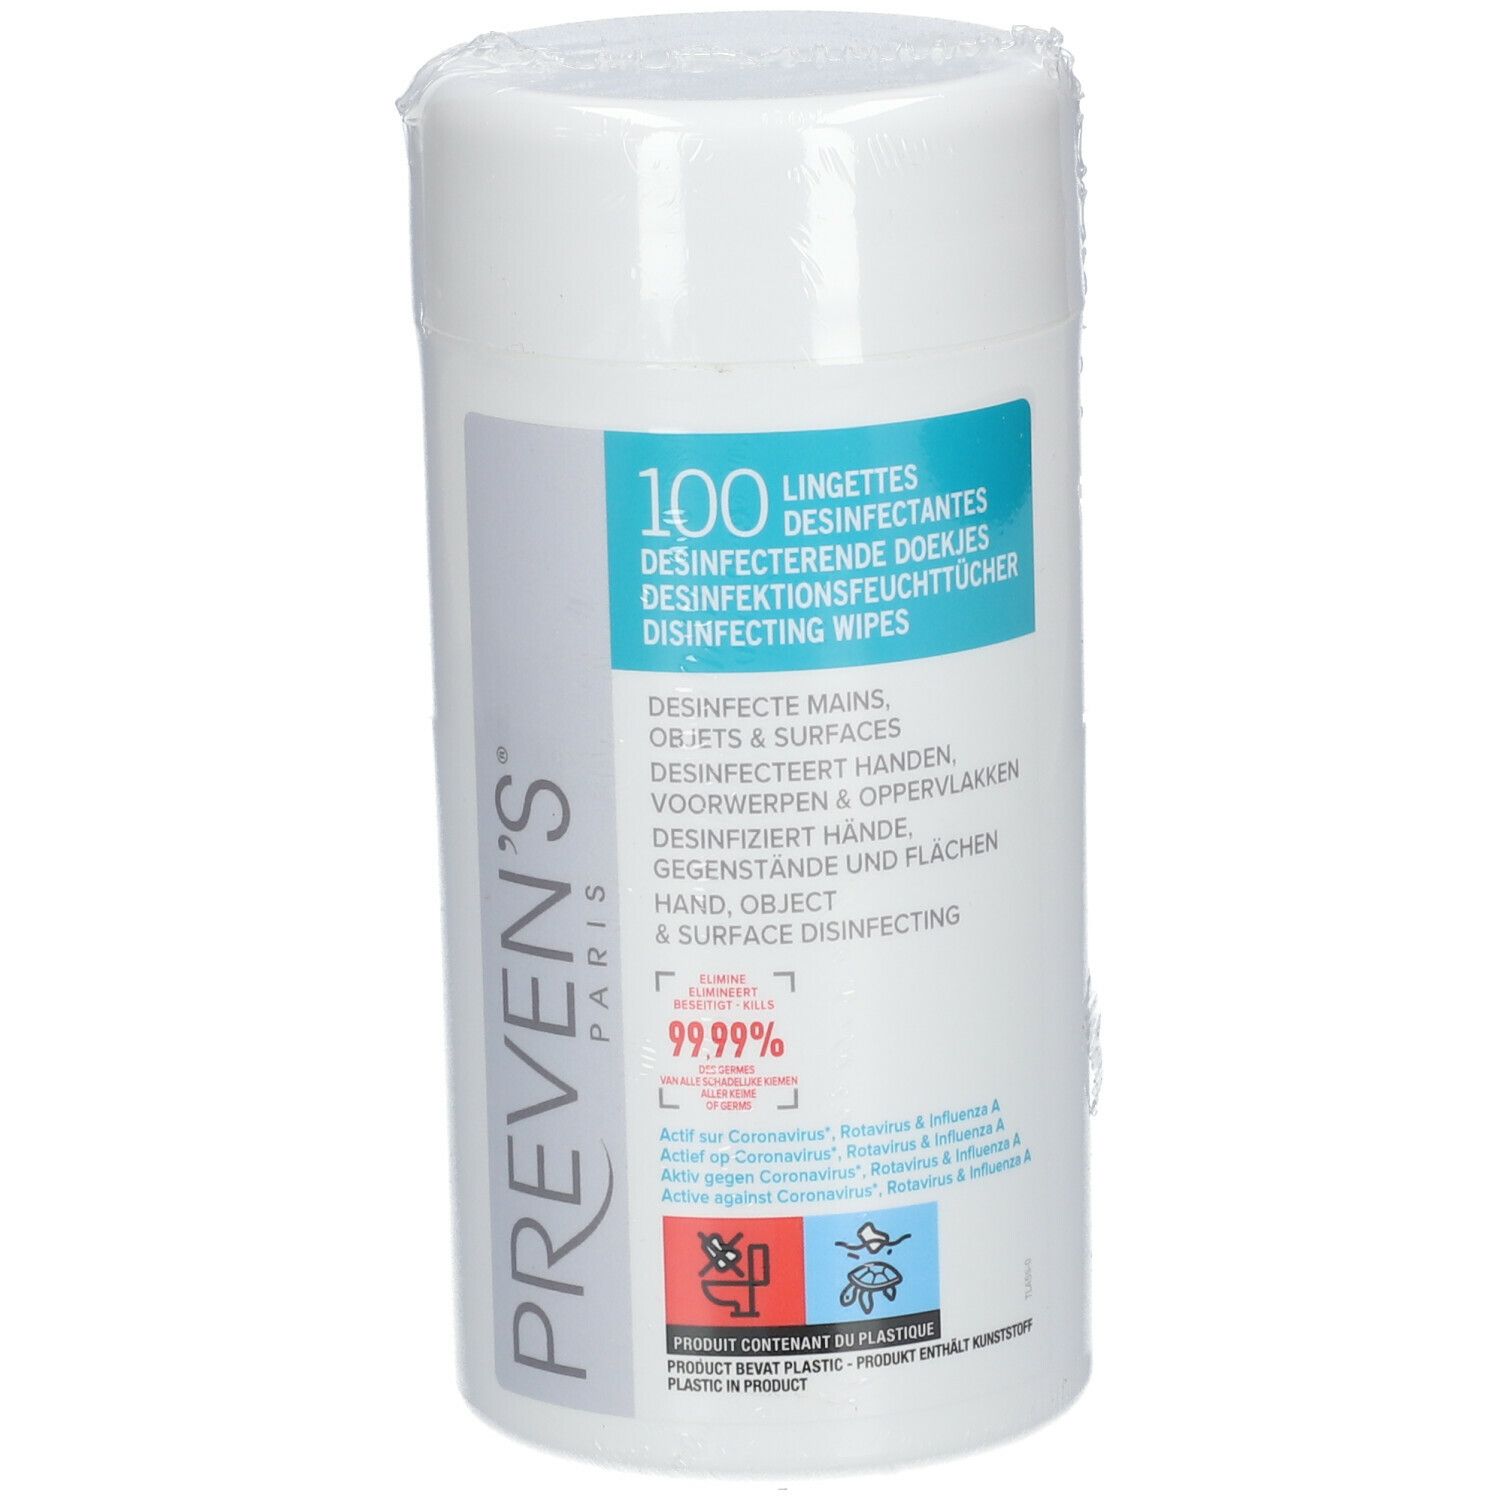 Preven's Desinfecte Mains 100 lingettes